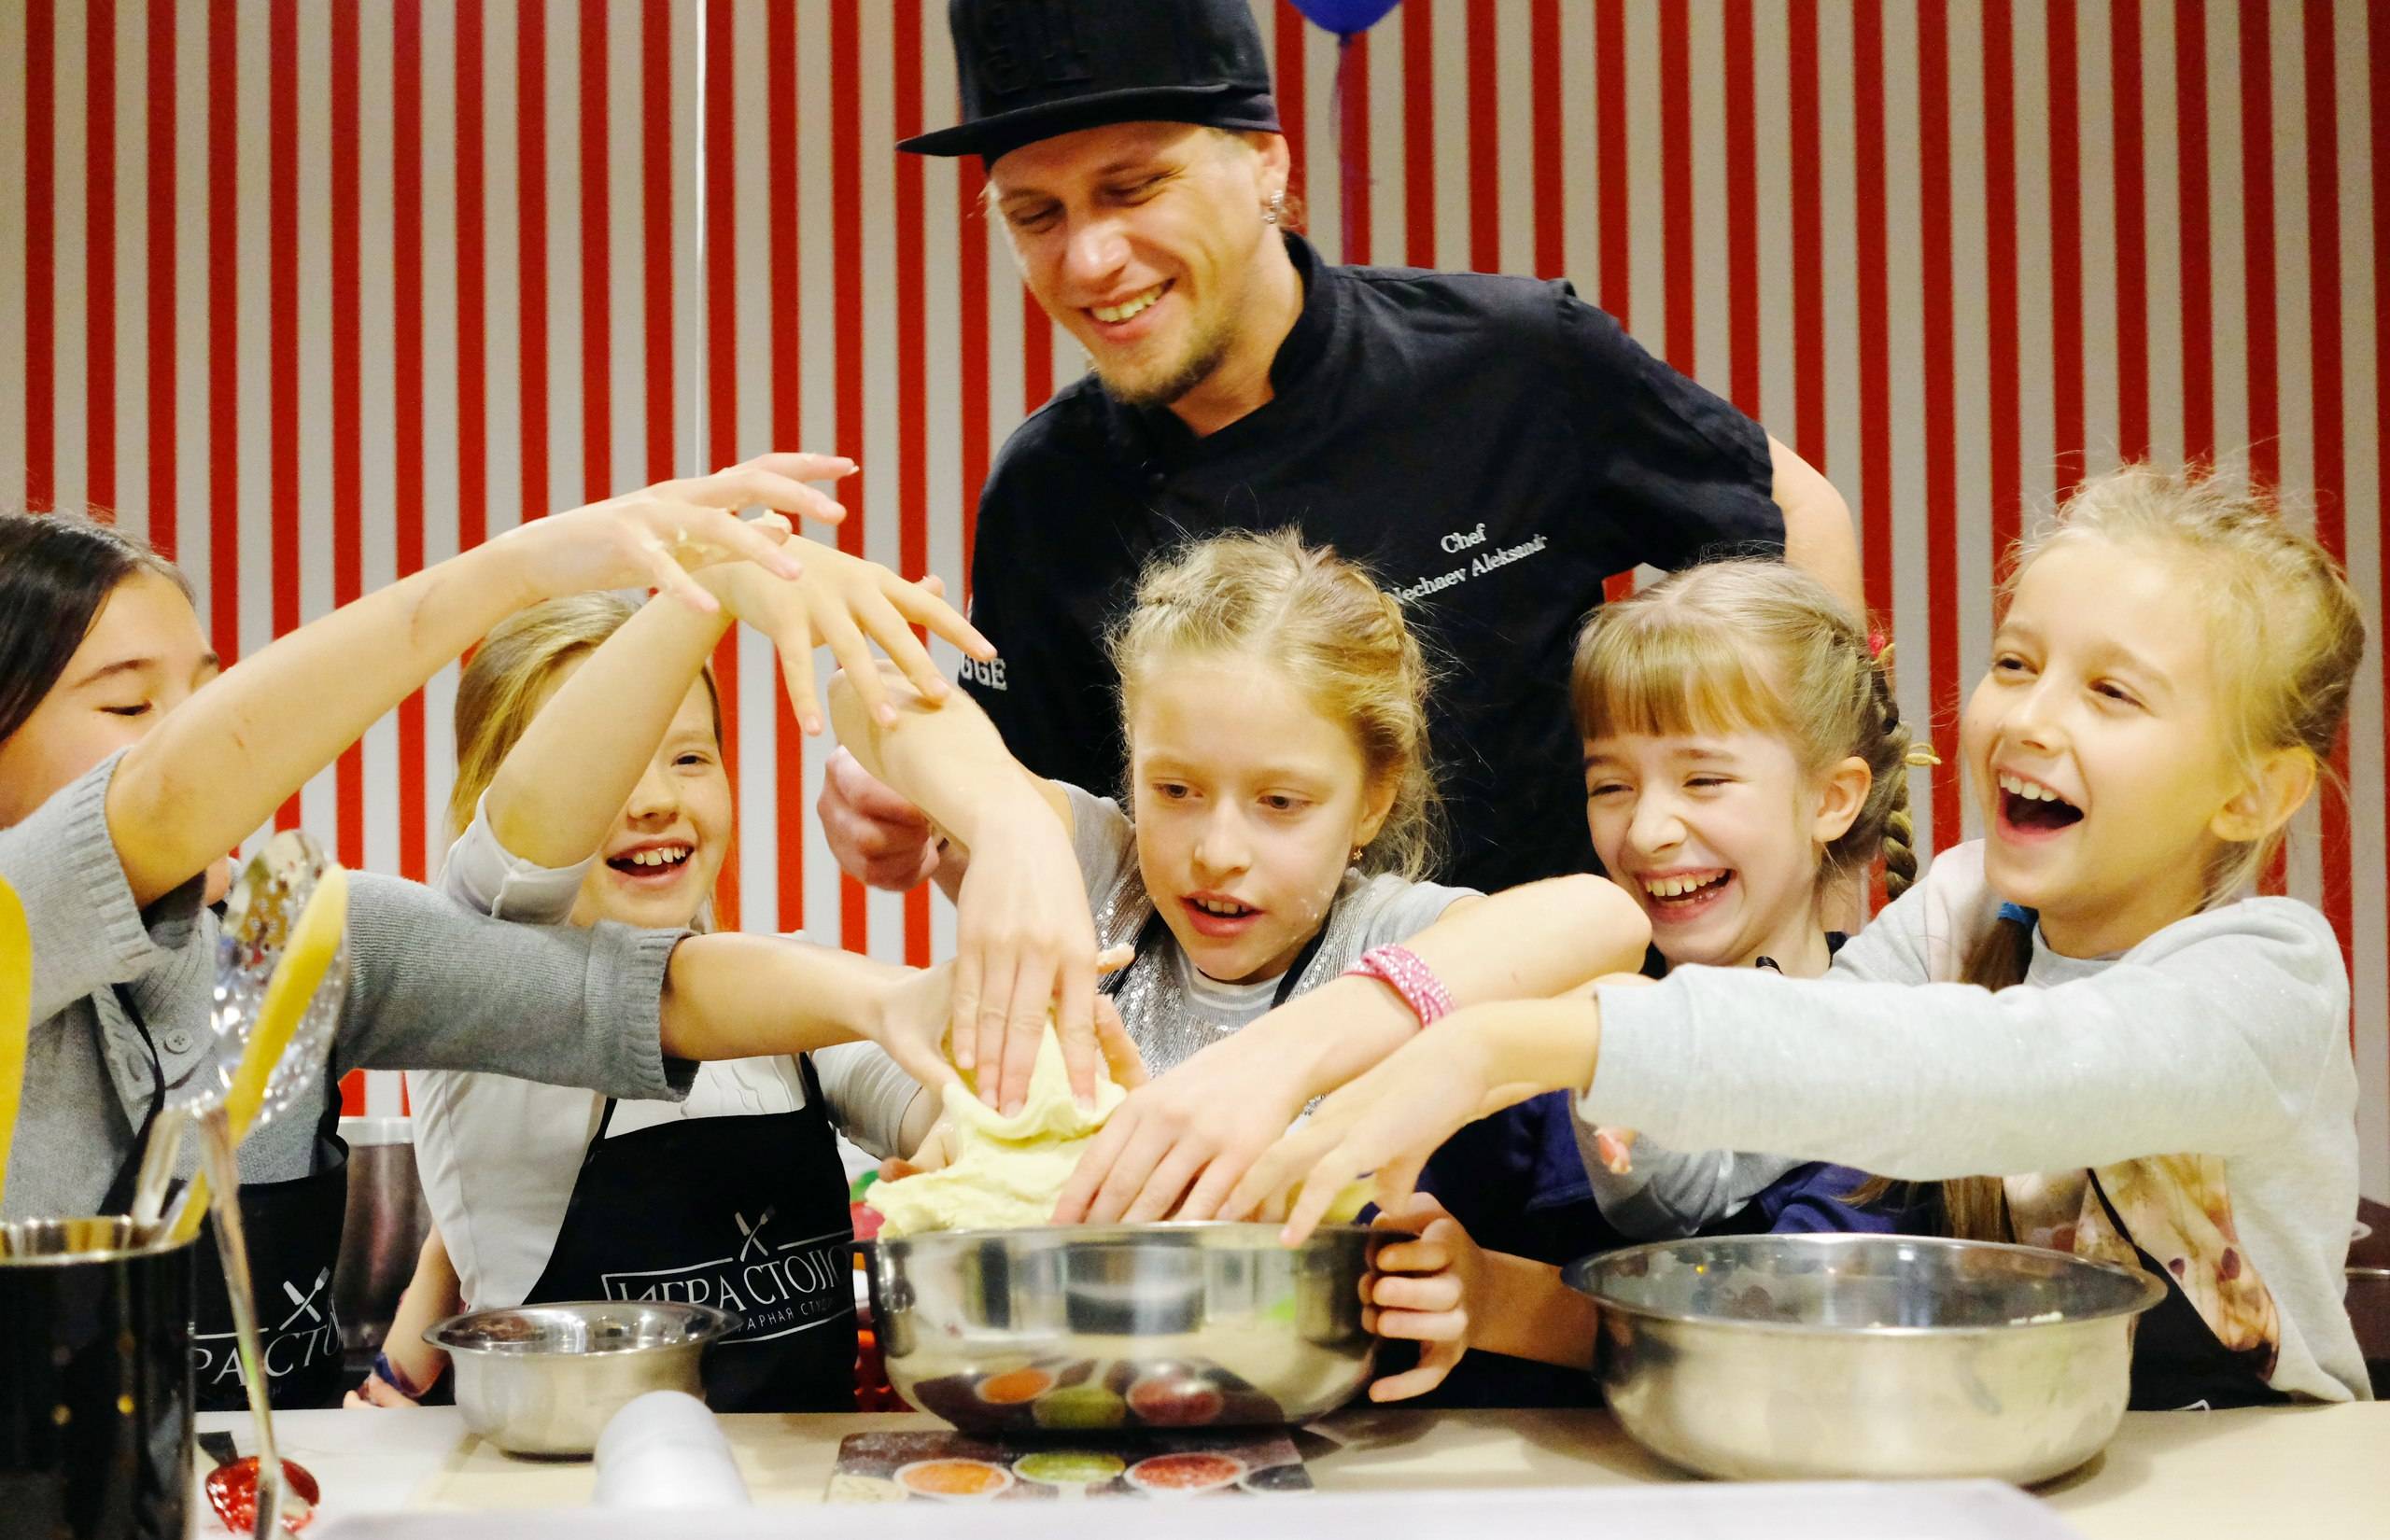 Как грамотно подготовить и провести детский кулинарный мастер-класс: идеи и сценарий мероприятия